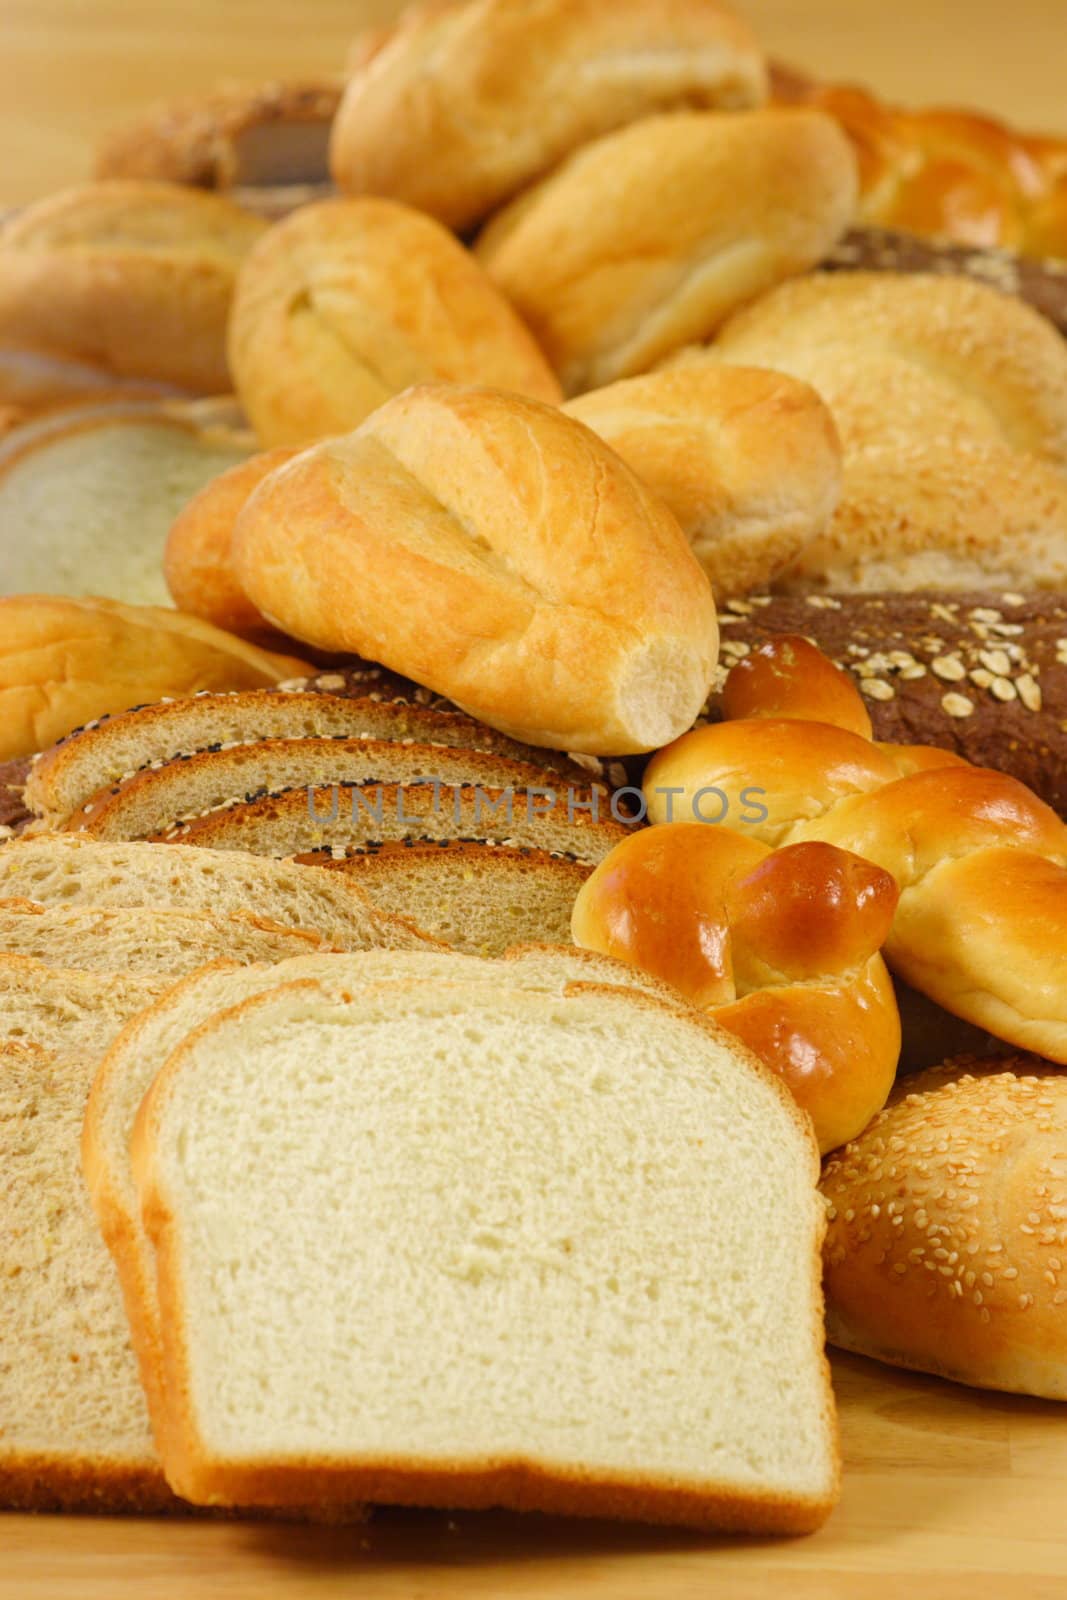 fresh breads by tacar